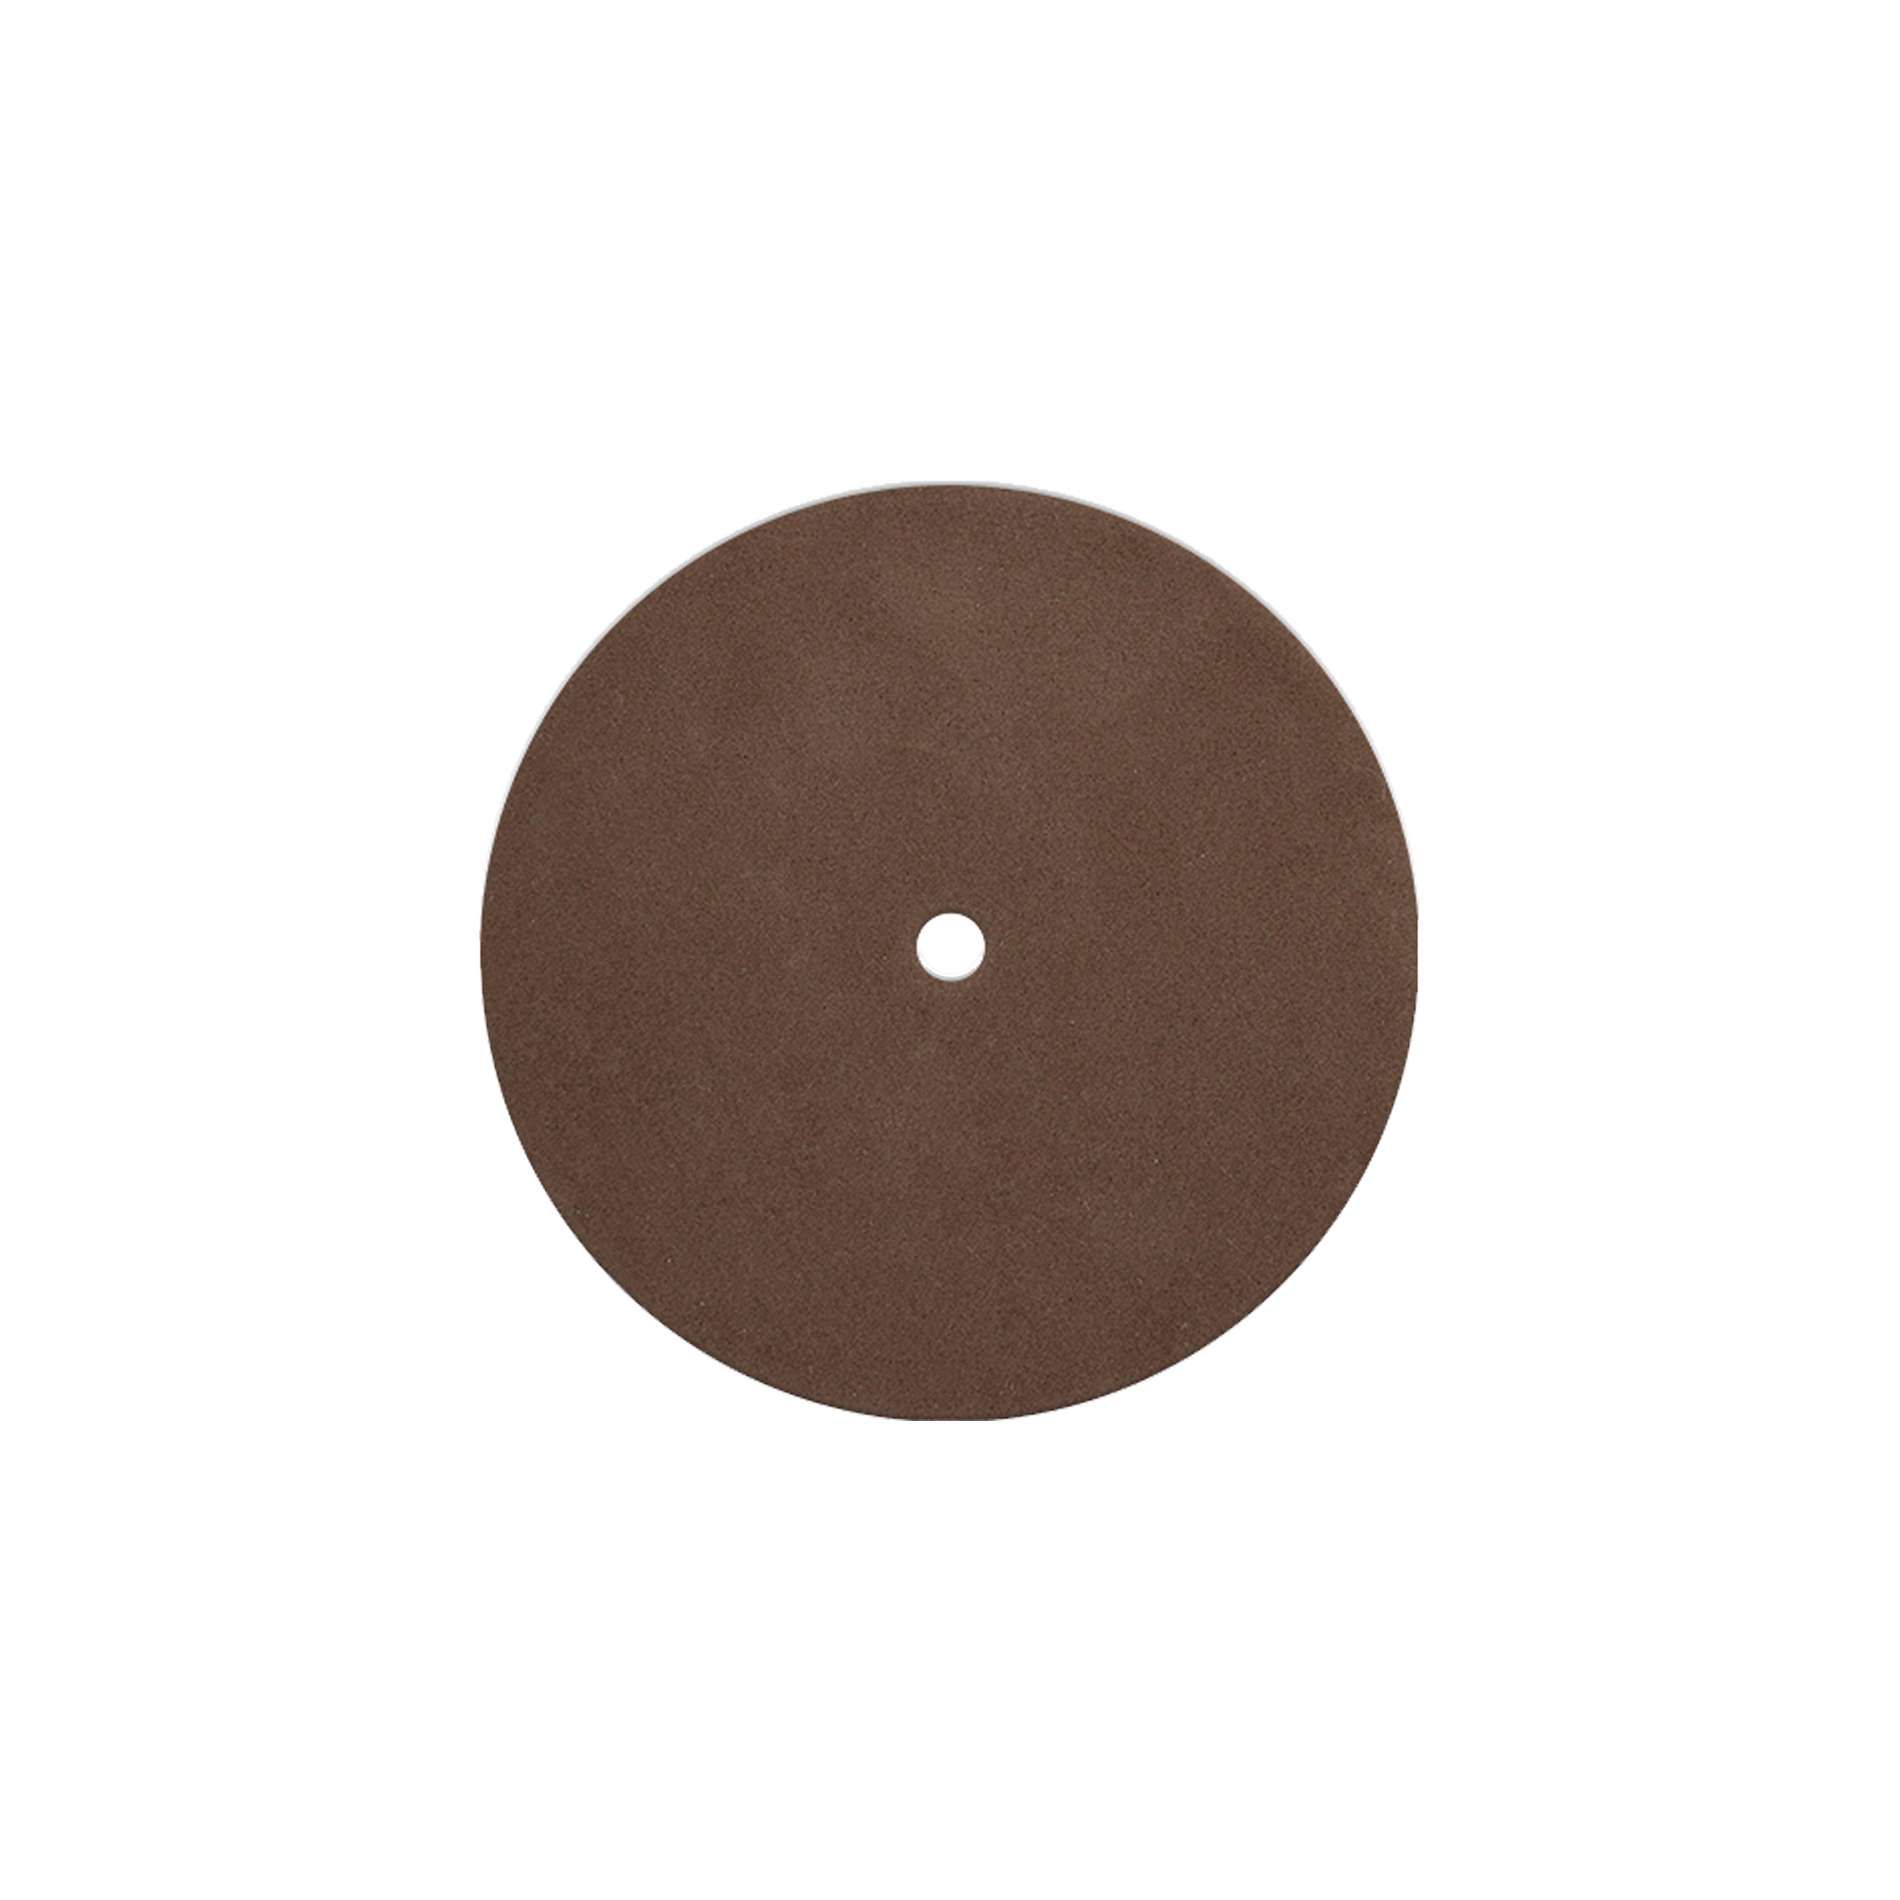 Enova Hifi Pack Nettoyage Platine Vinyle - Pnpv20 - Kit de limpieza - Variation 2